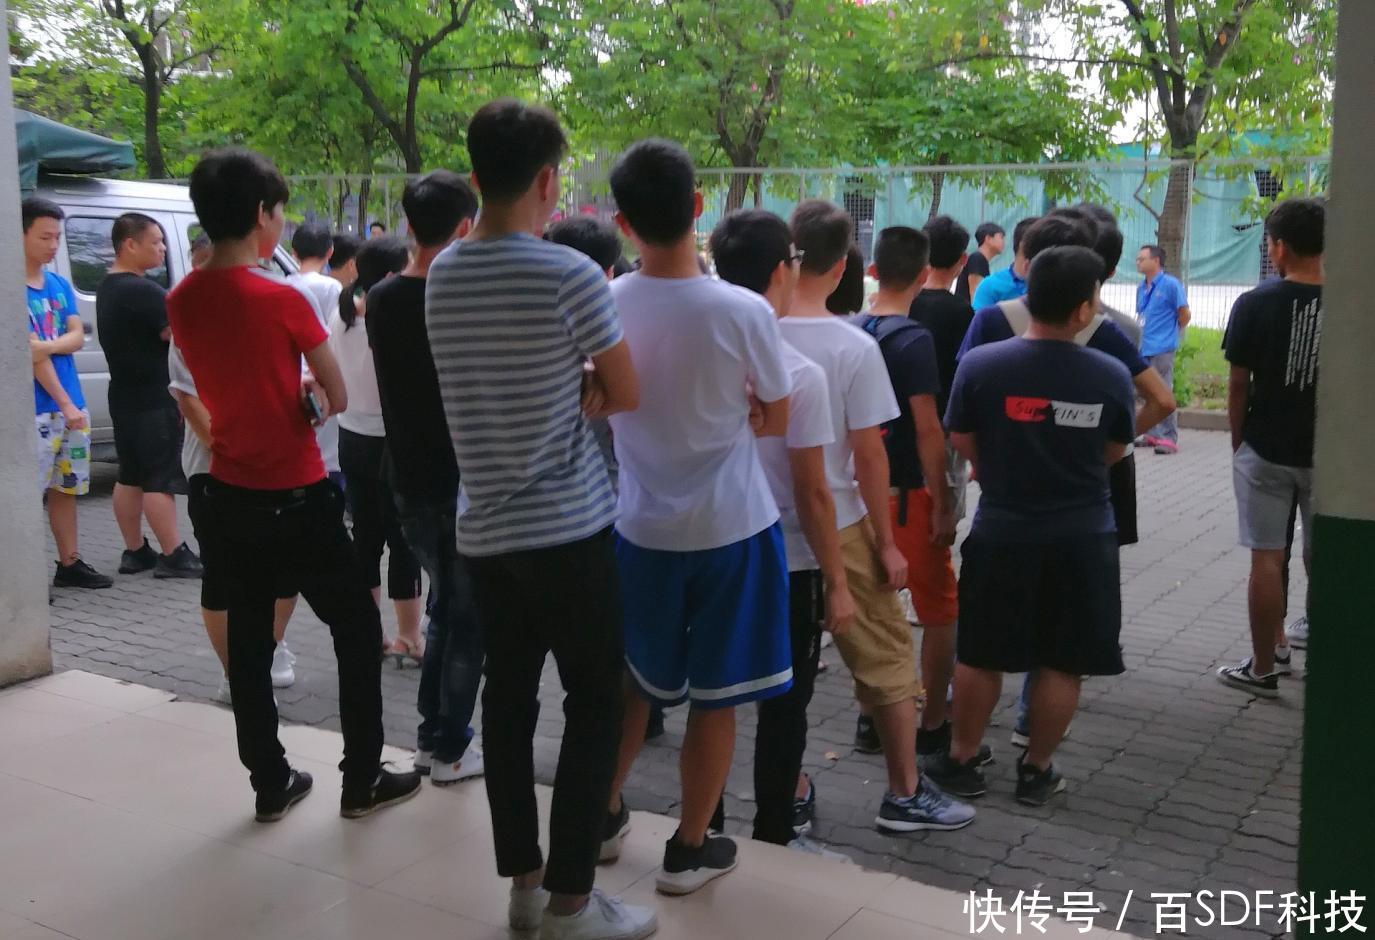 工期两个月,一批学生工离开学校,组团去东莞上班